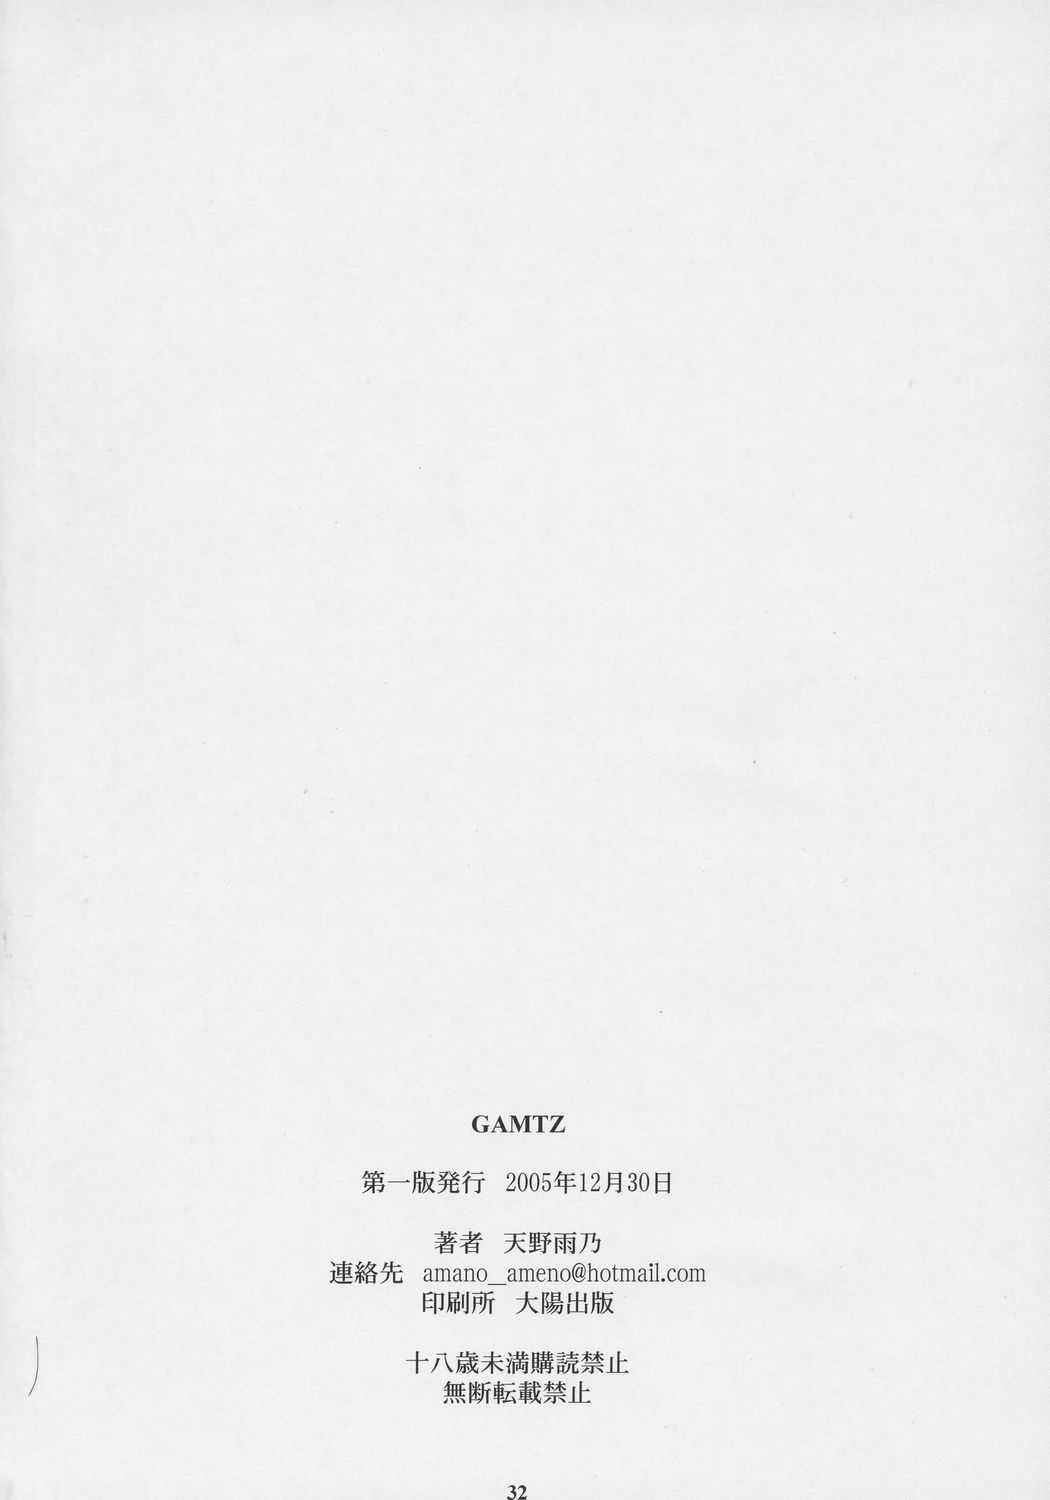 [Circle M (Amano Ameno)] Gamtz (gantz) [サークルM (天野雨乃)] GAMTZ (ガンツ)